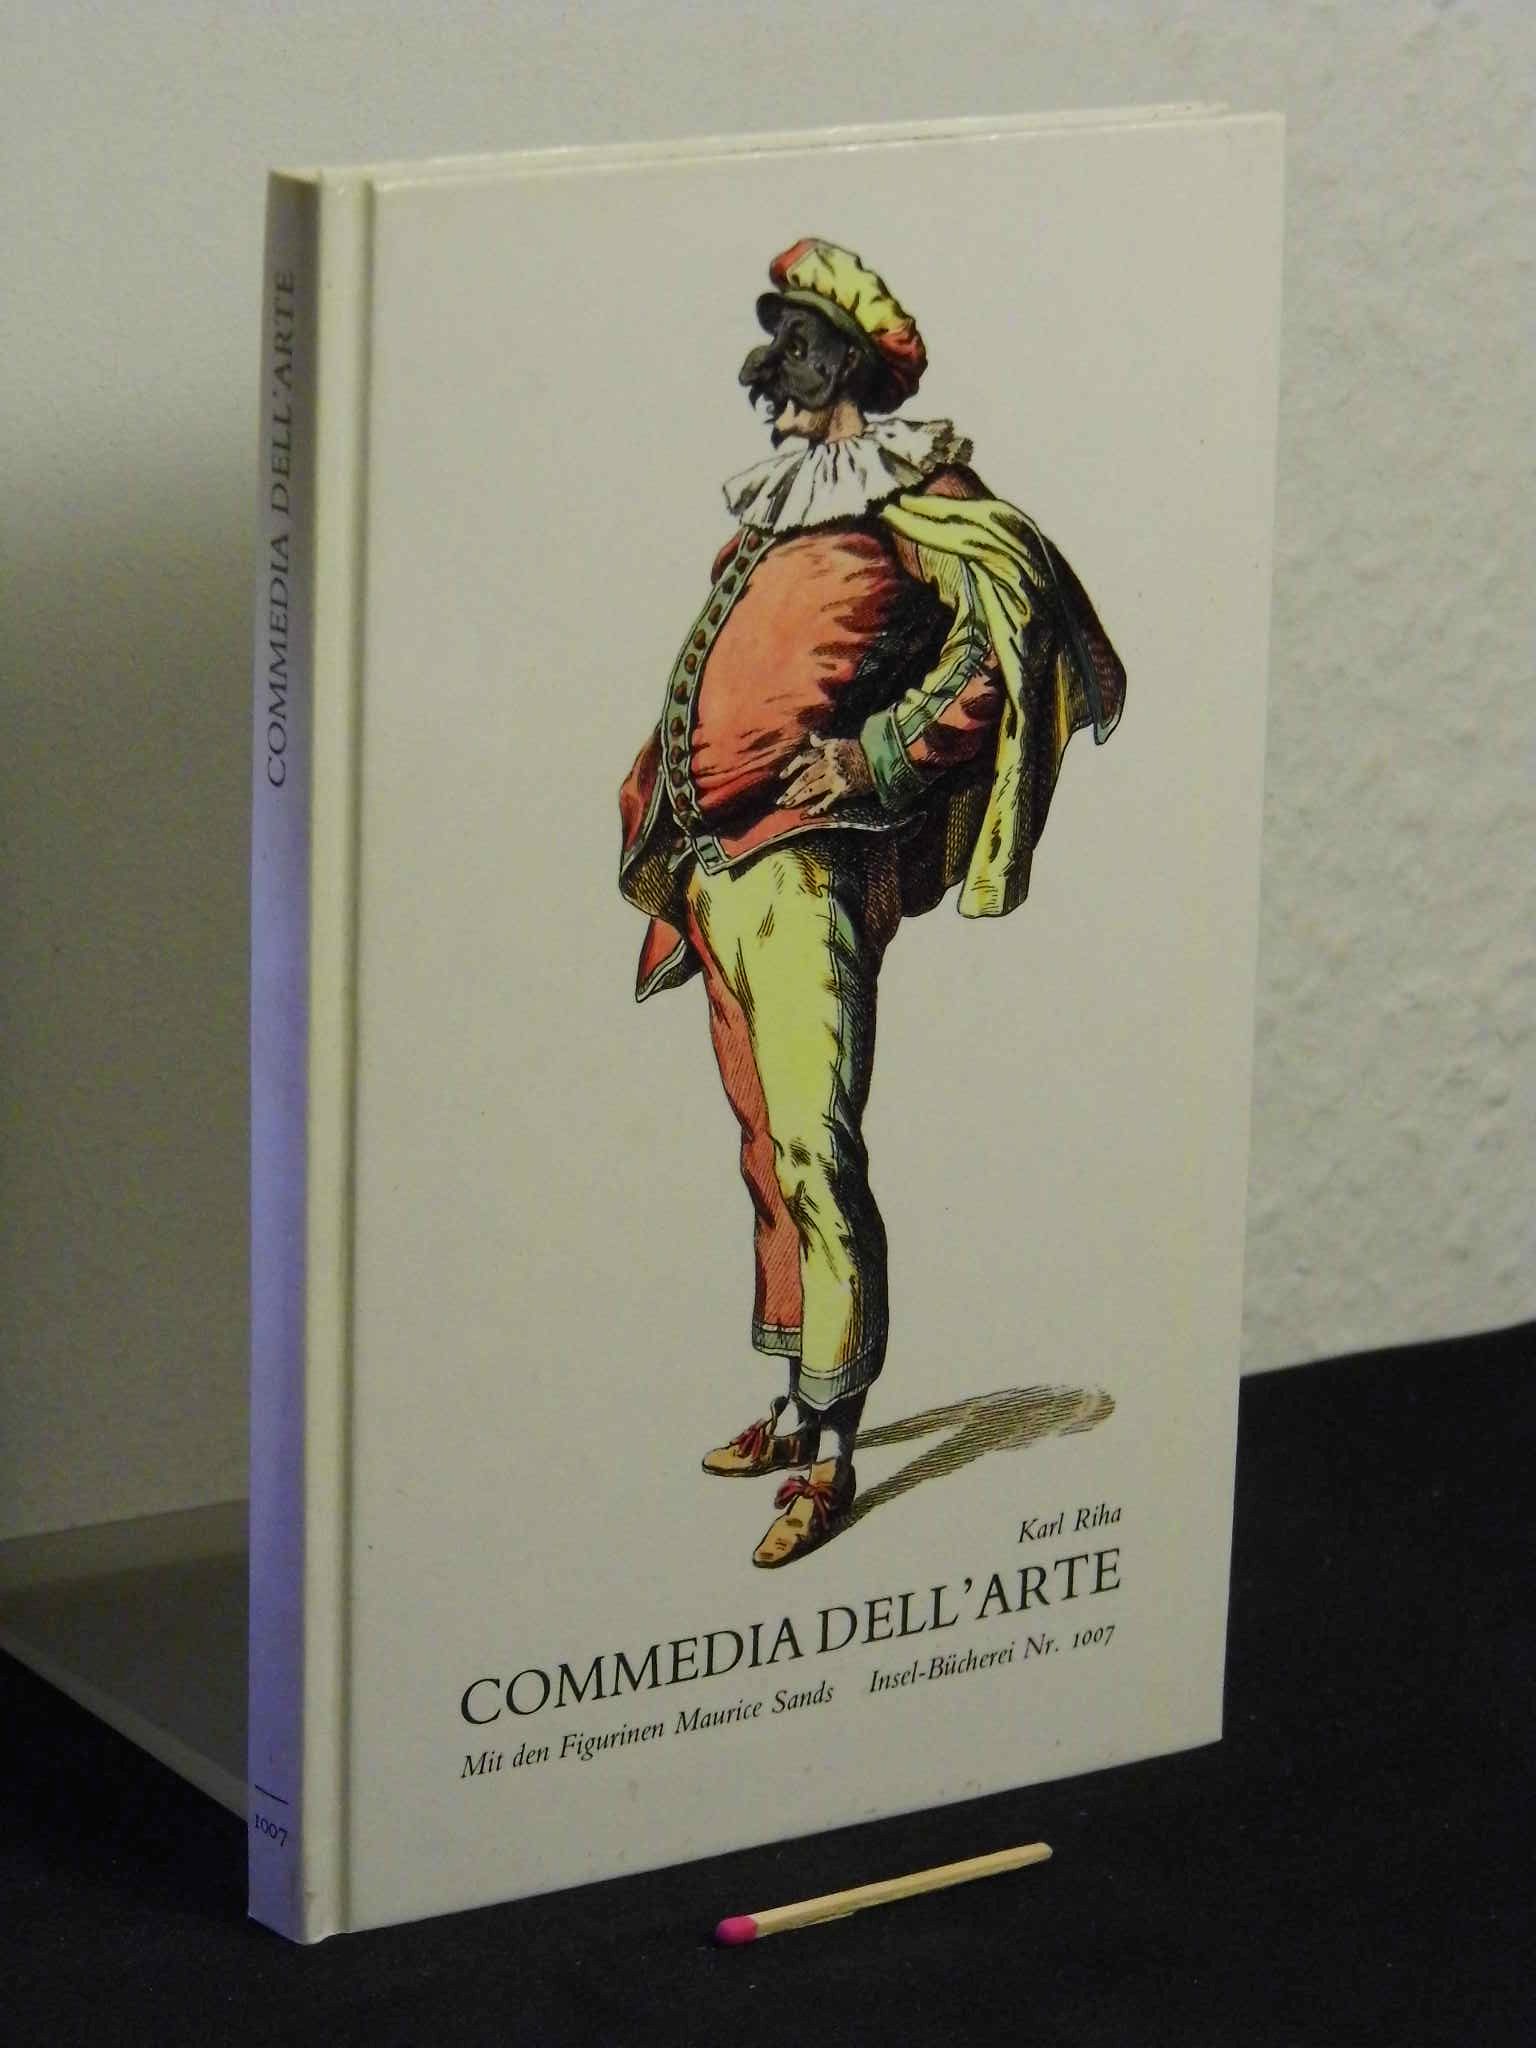 Commedia dell’ arte (Commedia dell arte) - Mit den Figurinen Maurice Sands - aus der Reihe: IB Insel-Bücherei - Band: 1007 [2] - Riha, Karl -